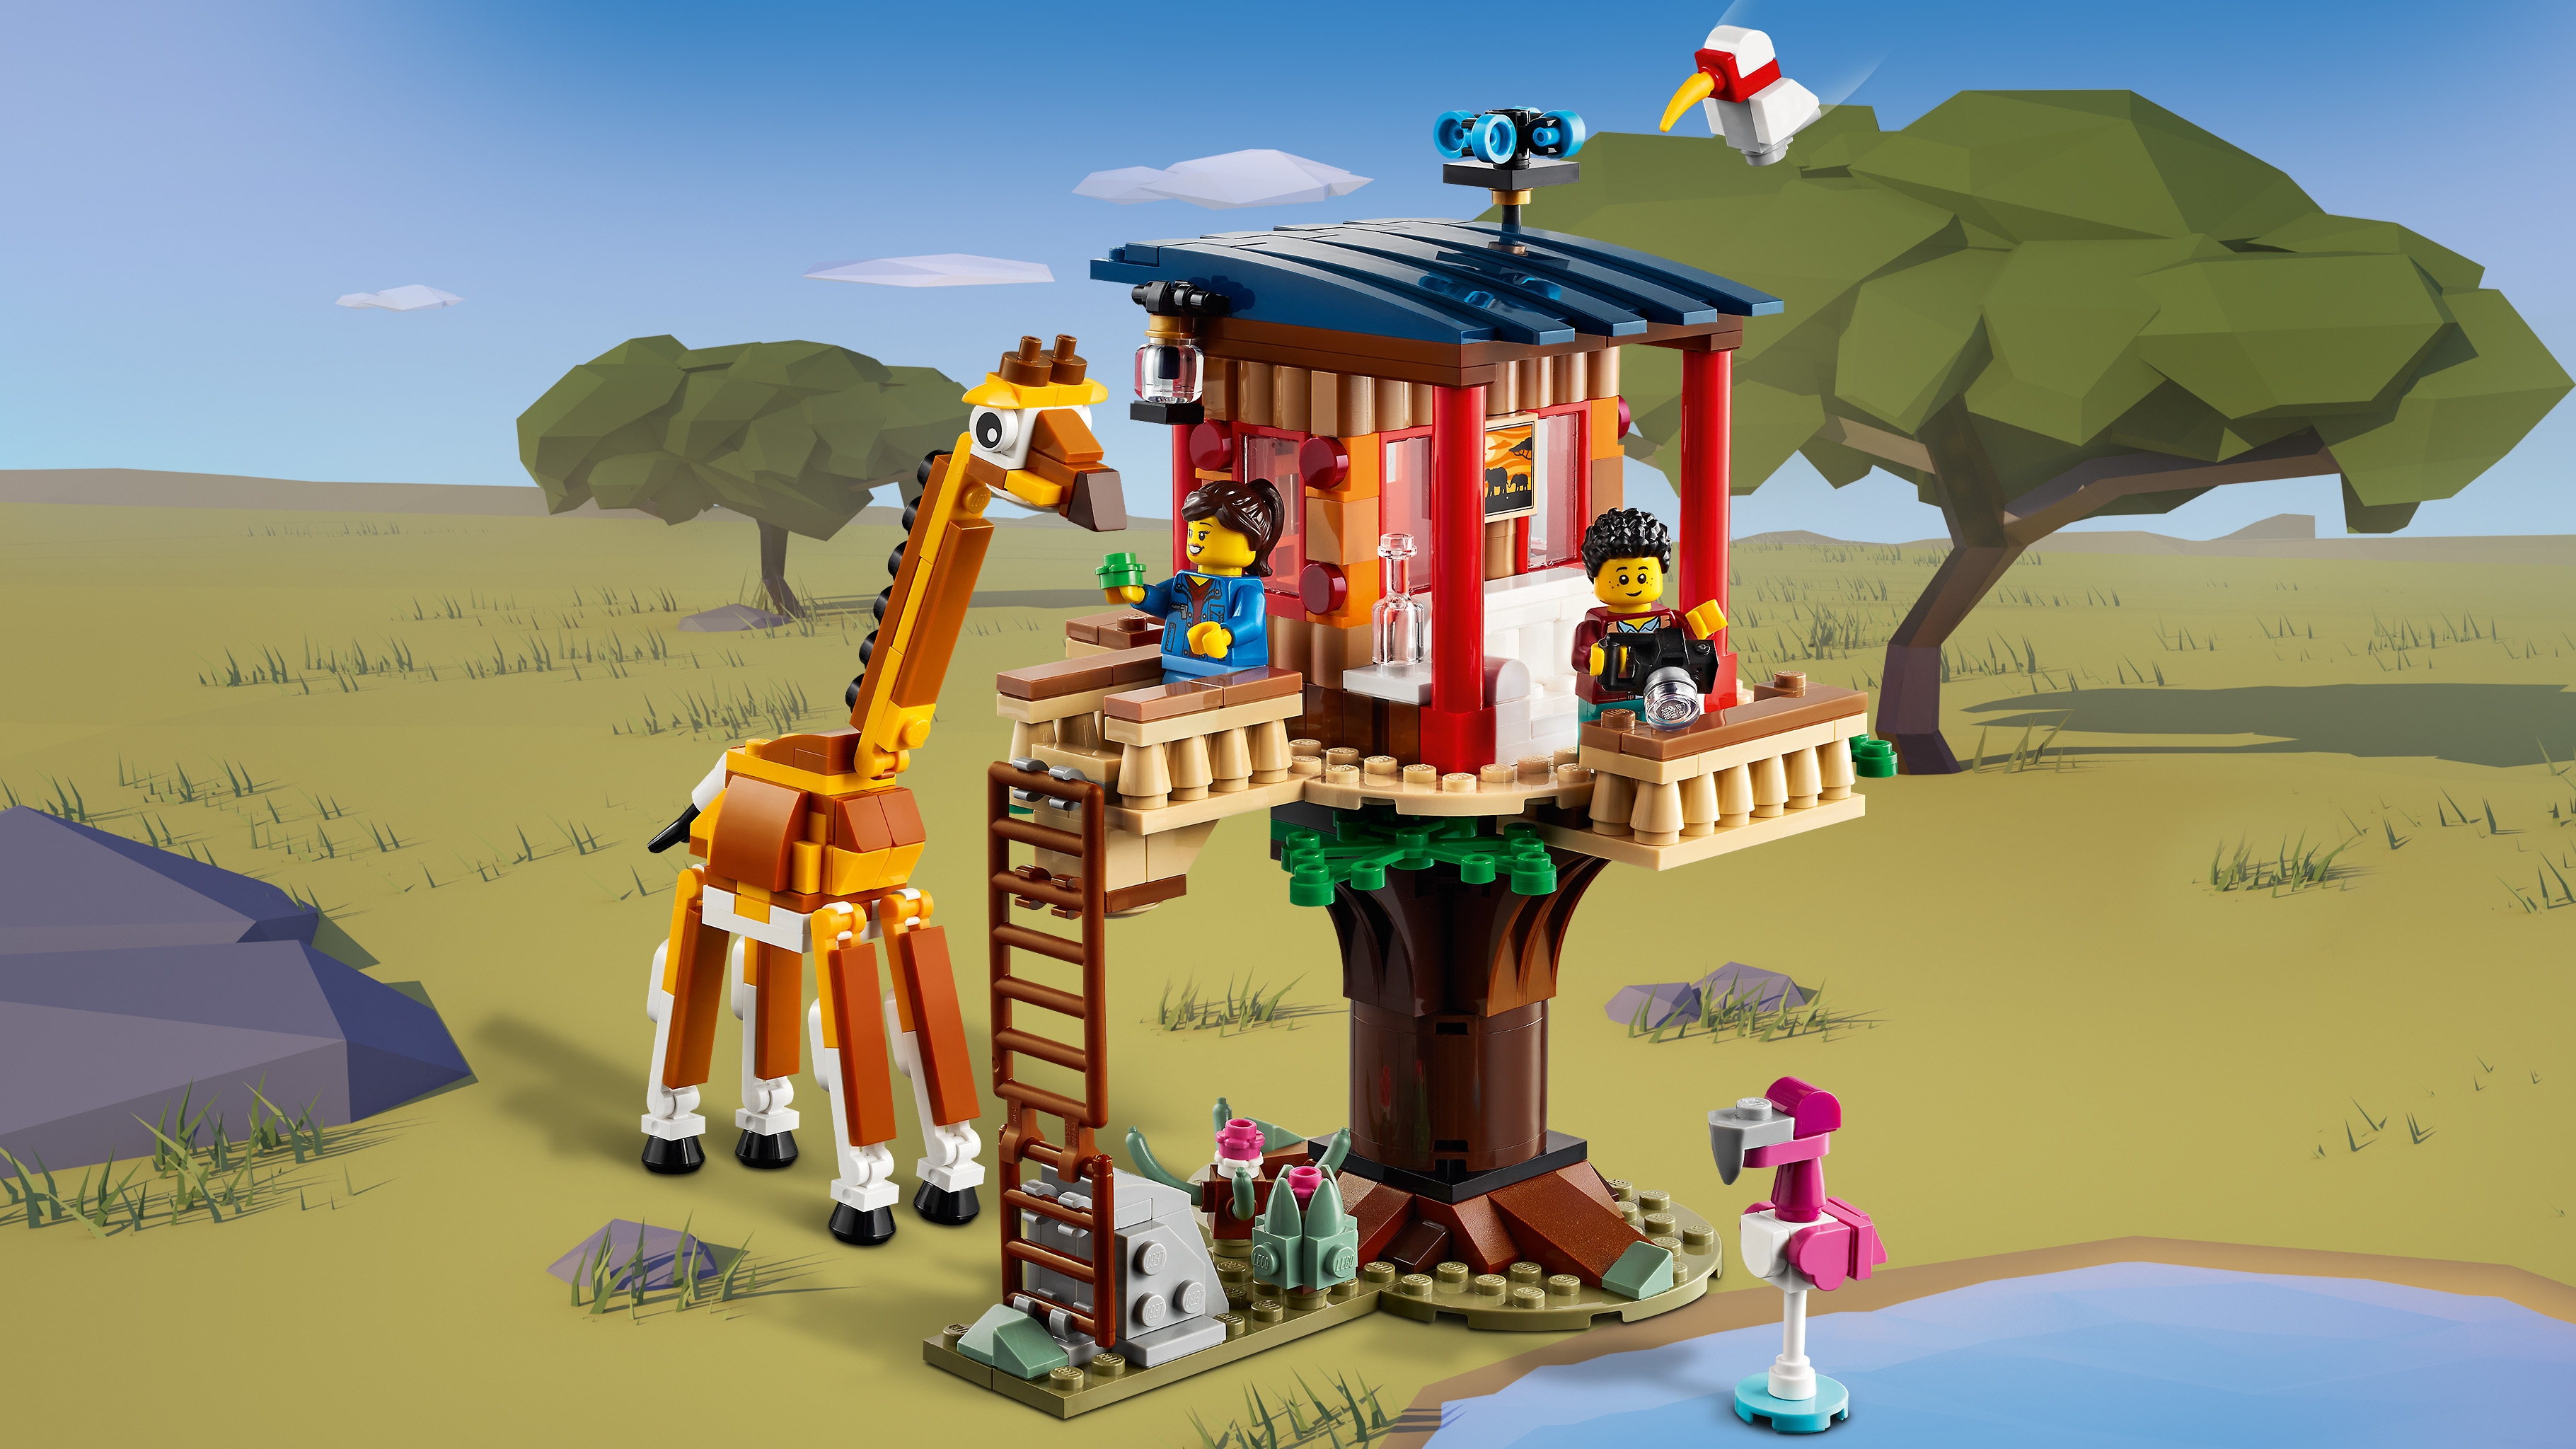 LEGO 31116 Creator 3 in 1 Casa sull’Albero del Safari, Catamarano, Biplano,  Kit di Costruzione con Nave, Aereo, Giraffa e Leone, Giochi per Bambini da